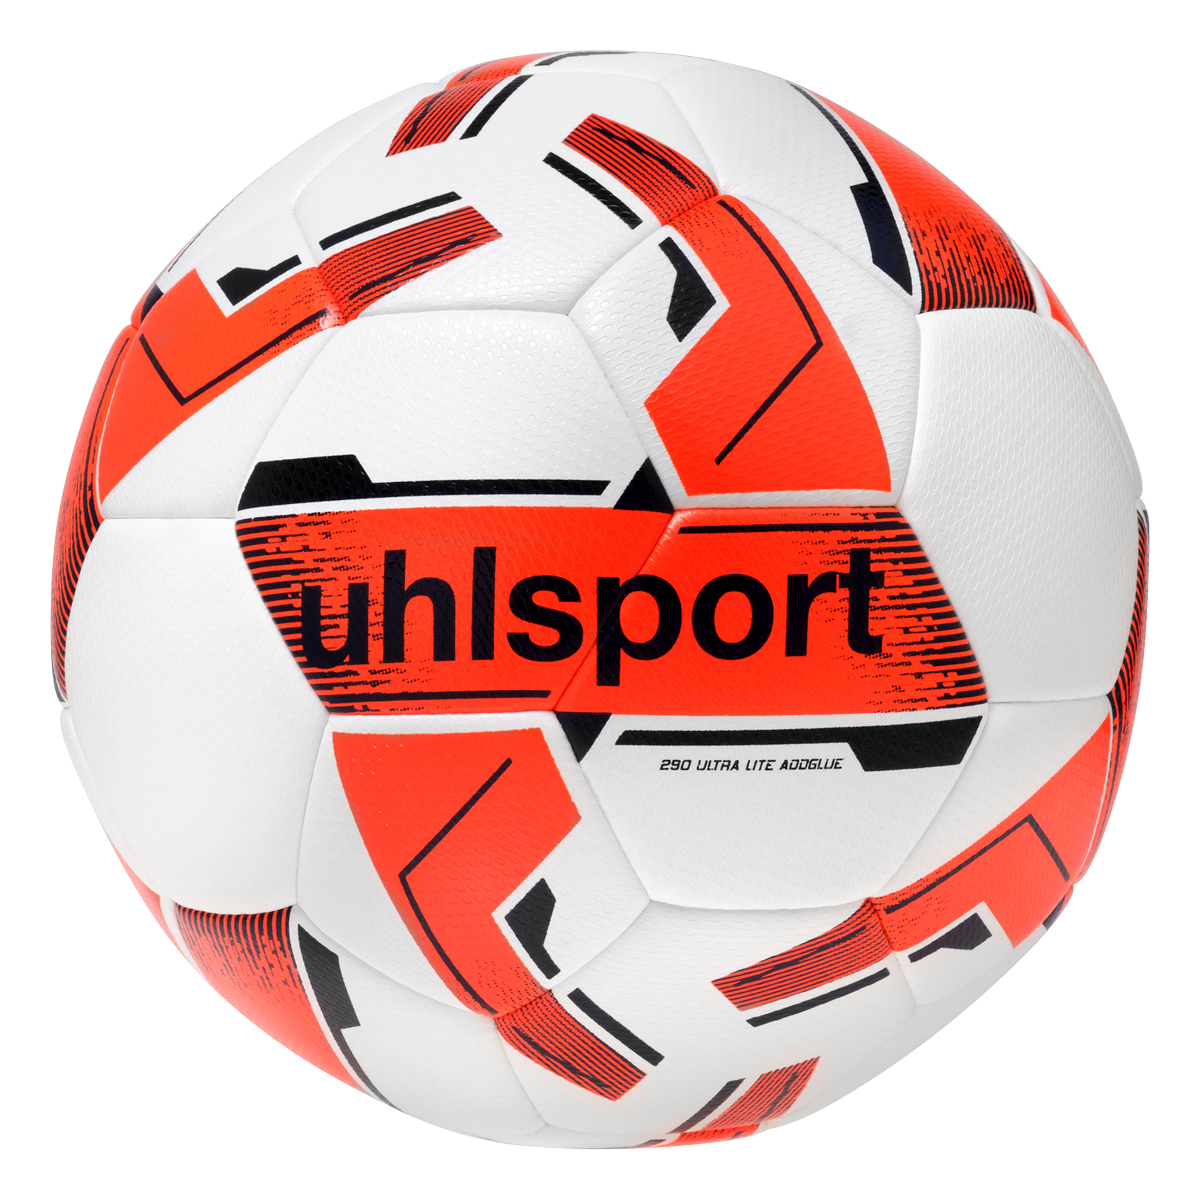 uhlsport Fußball 290 Ultra Lite Addglue weiß/fluo orange/marine